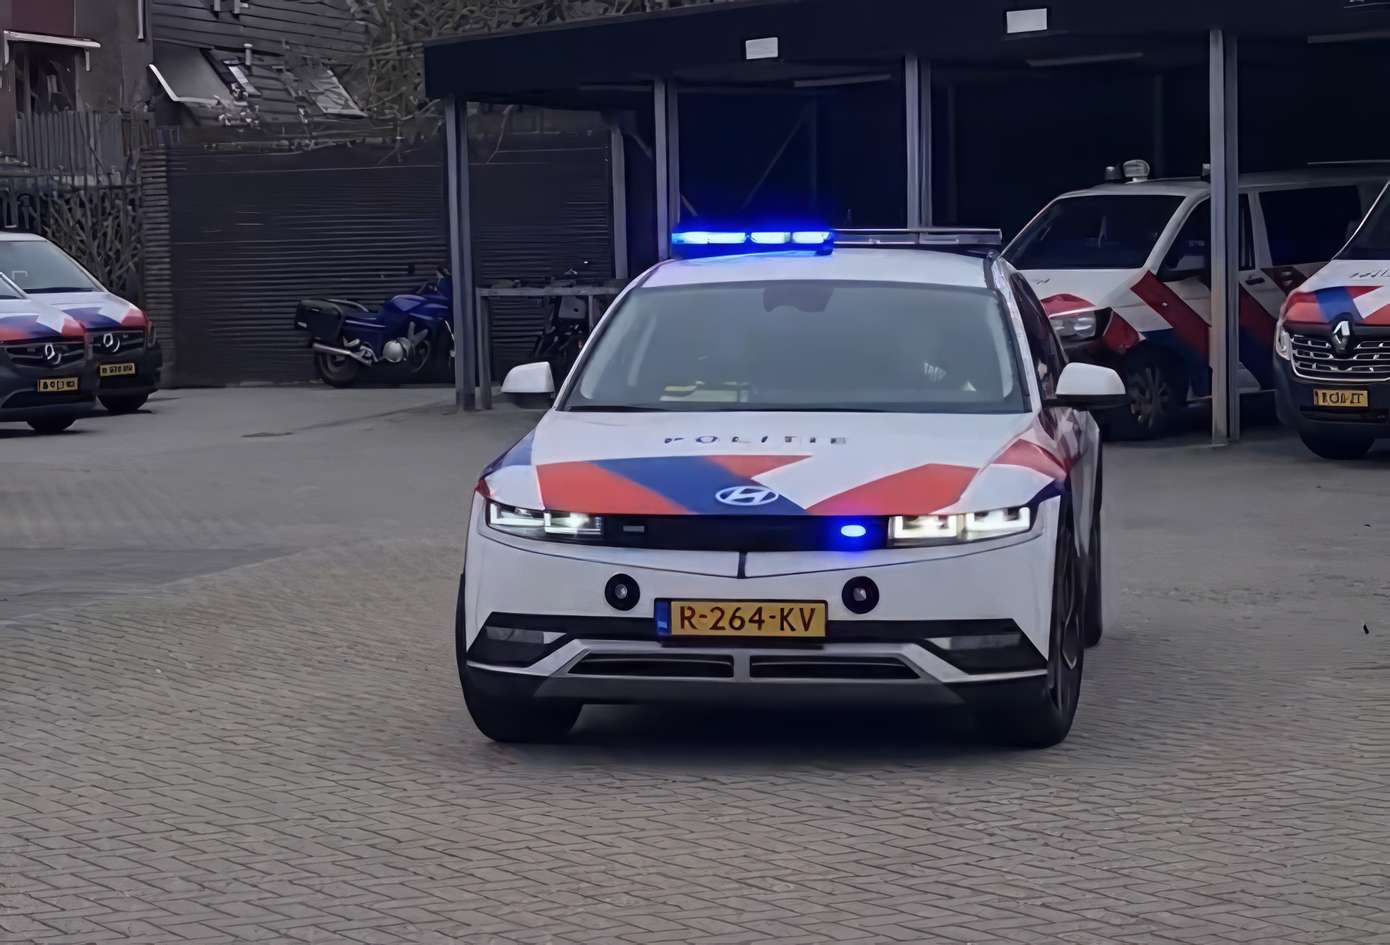 Video: Politie Noord-Drenthe onderzoekt komende tijd mogelijkheden elektrisch rijden met nieuw elektrisch politievoertuig